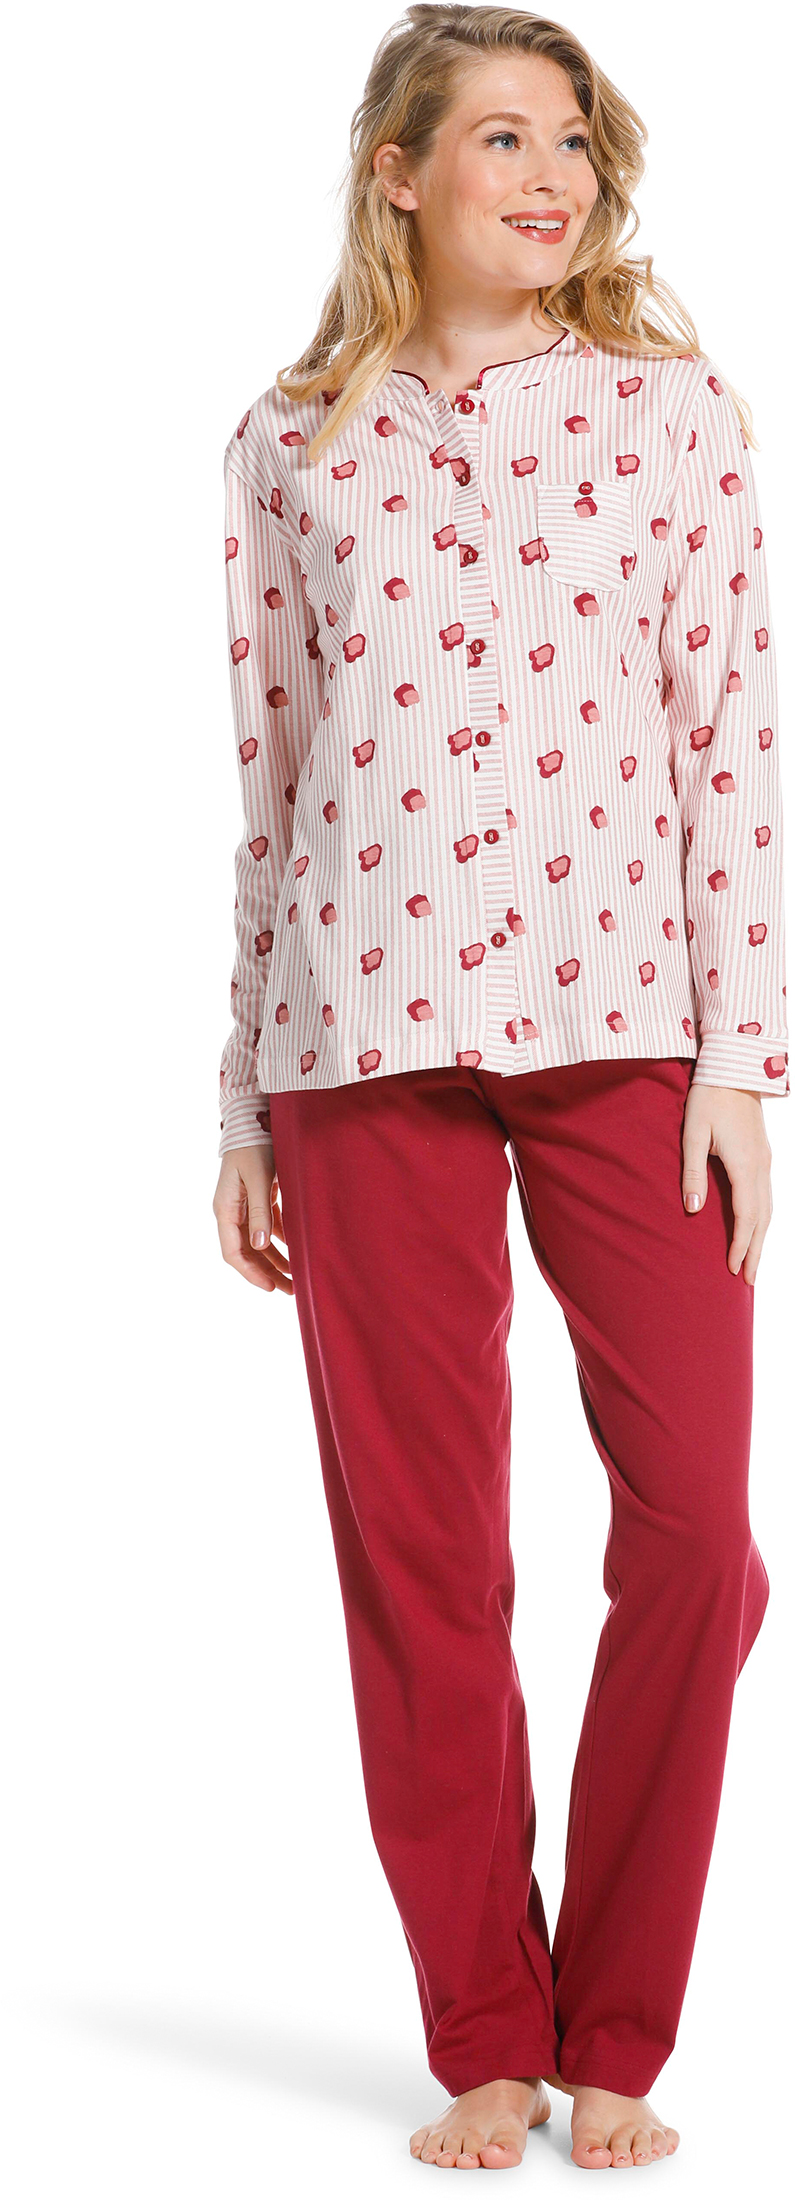 Pastunette doorknoop dames pyjama 20222-104-6 - Rose - 40